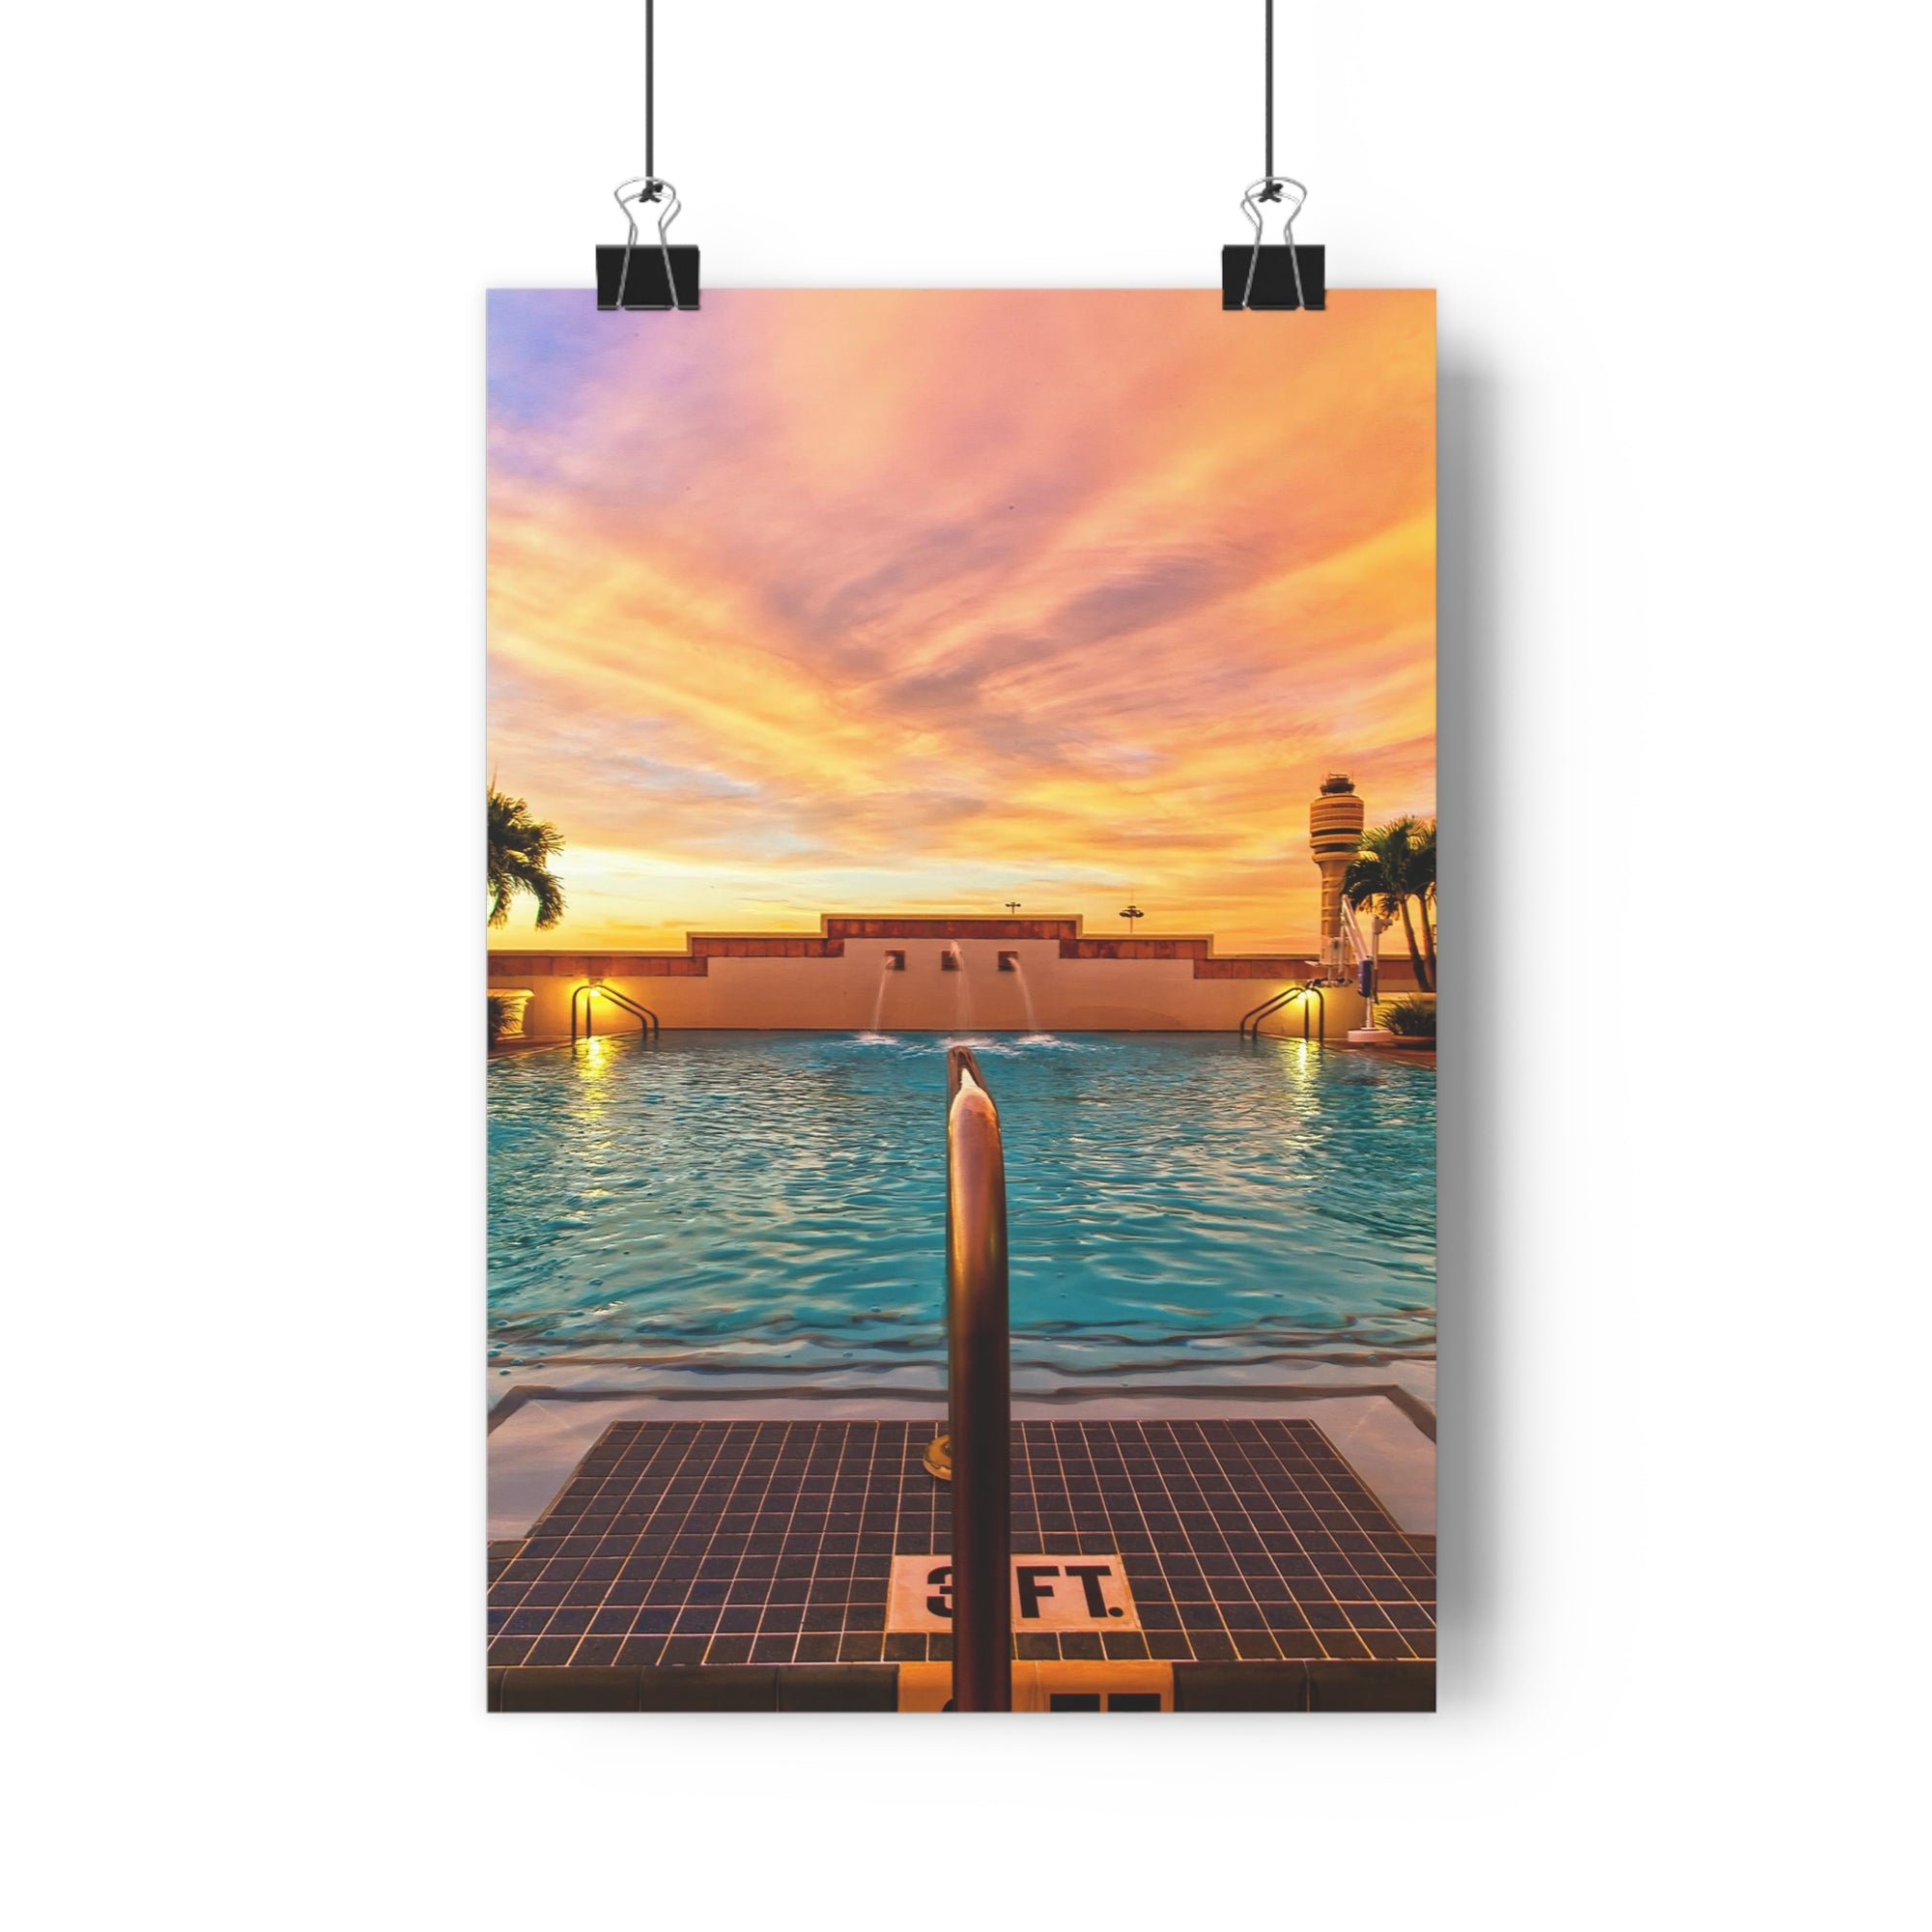 Impression du lever du soleil au bord de la piscine Hyatt